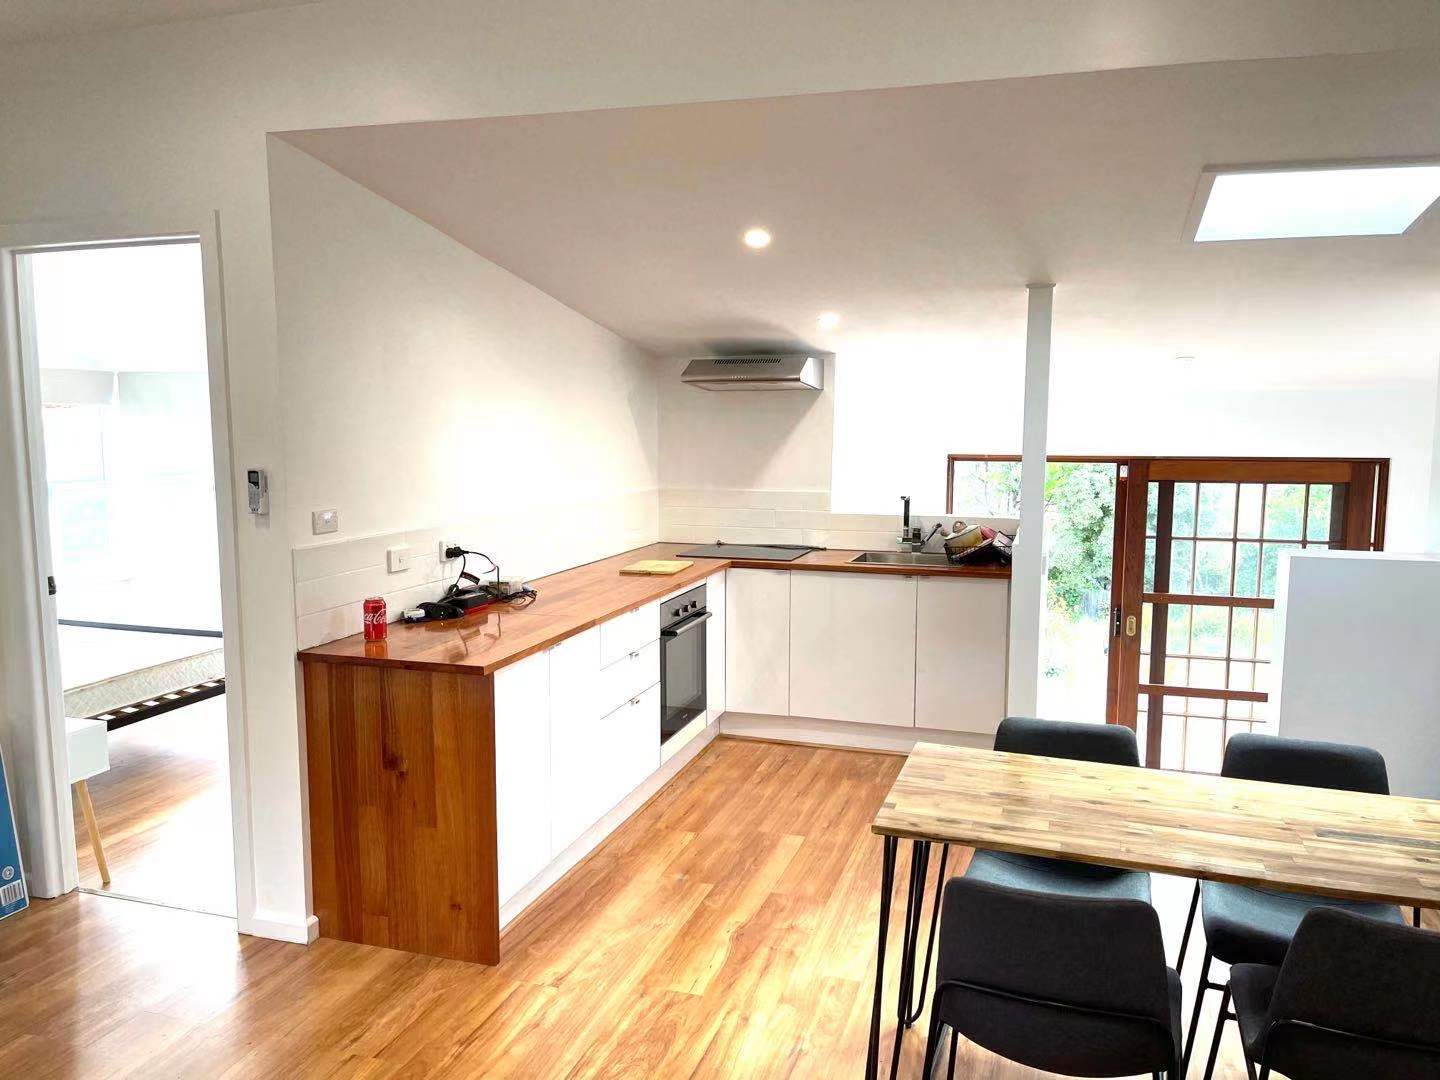 Lutana New Home Interior Design Image 1